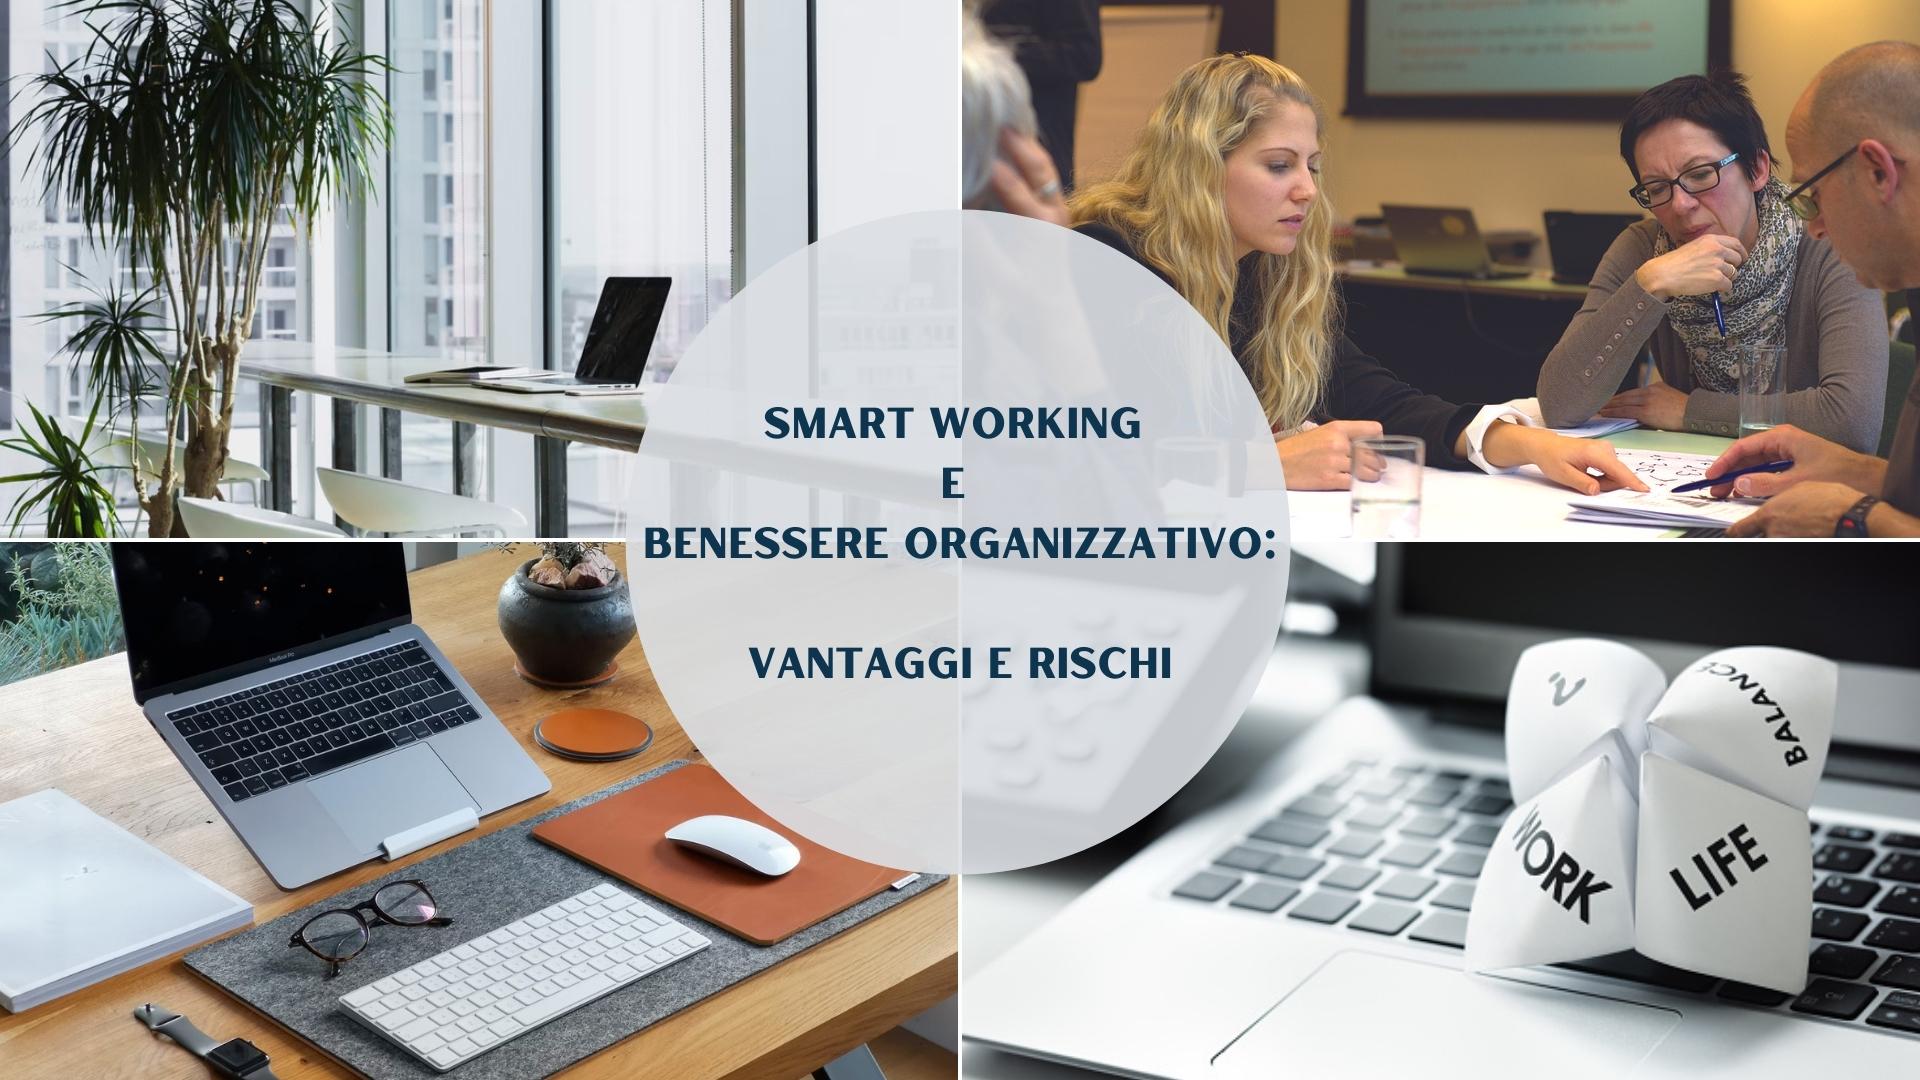 Smart working e benessere organizzativo